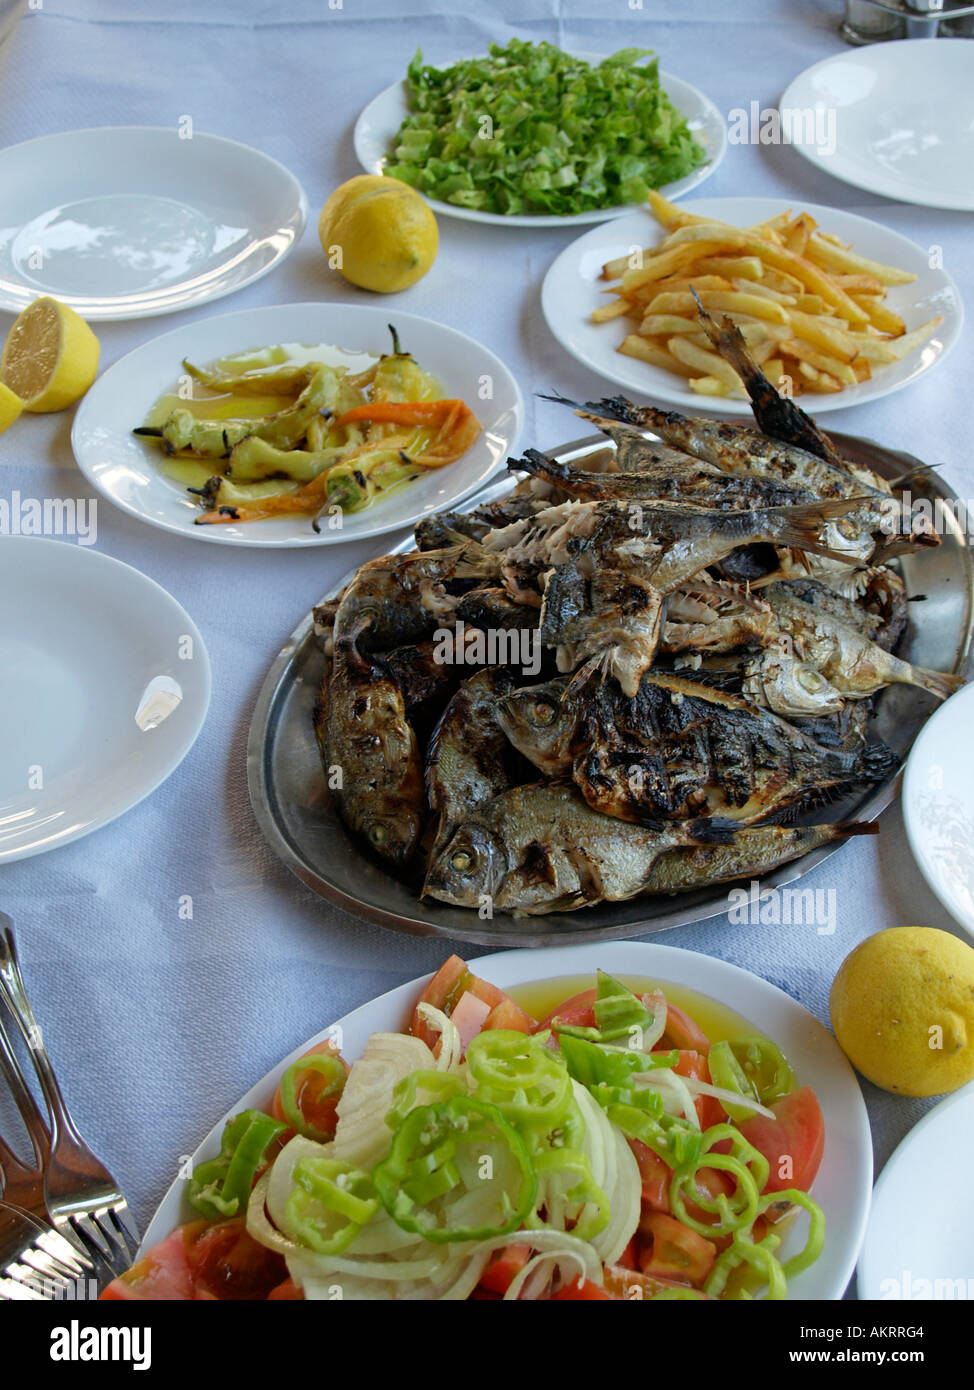 Repas typiquement grec avec des poissons grillés et des salades de légumes Banque D'Images